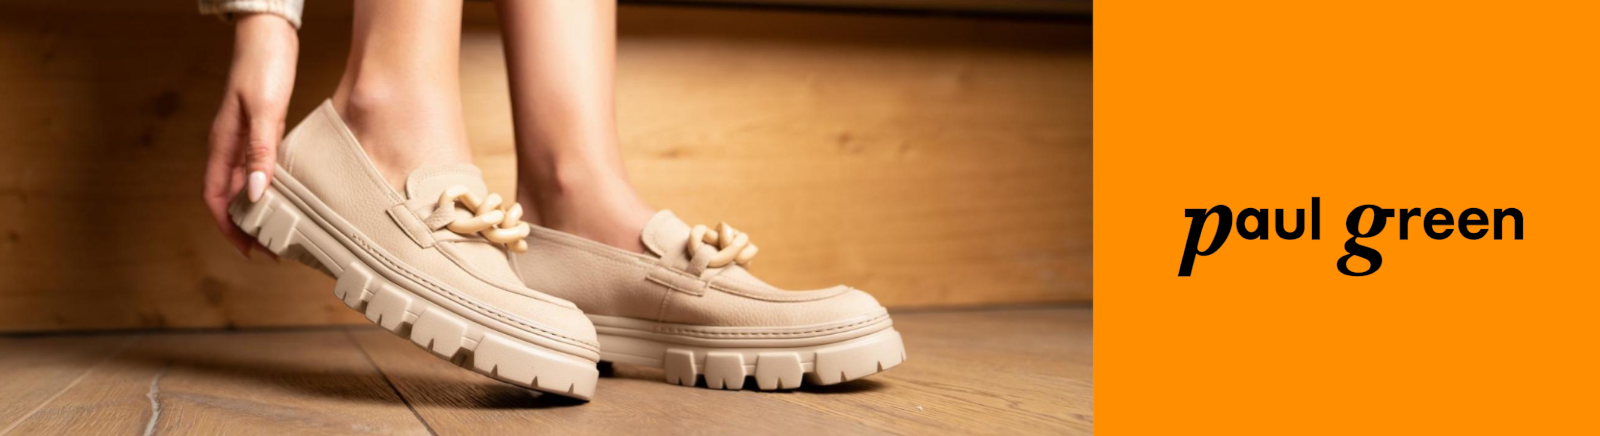 Juppen: Paul Green Schnürschuhe für Damen online shoppen